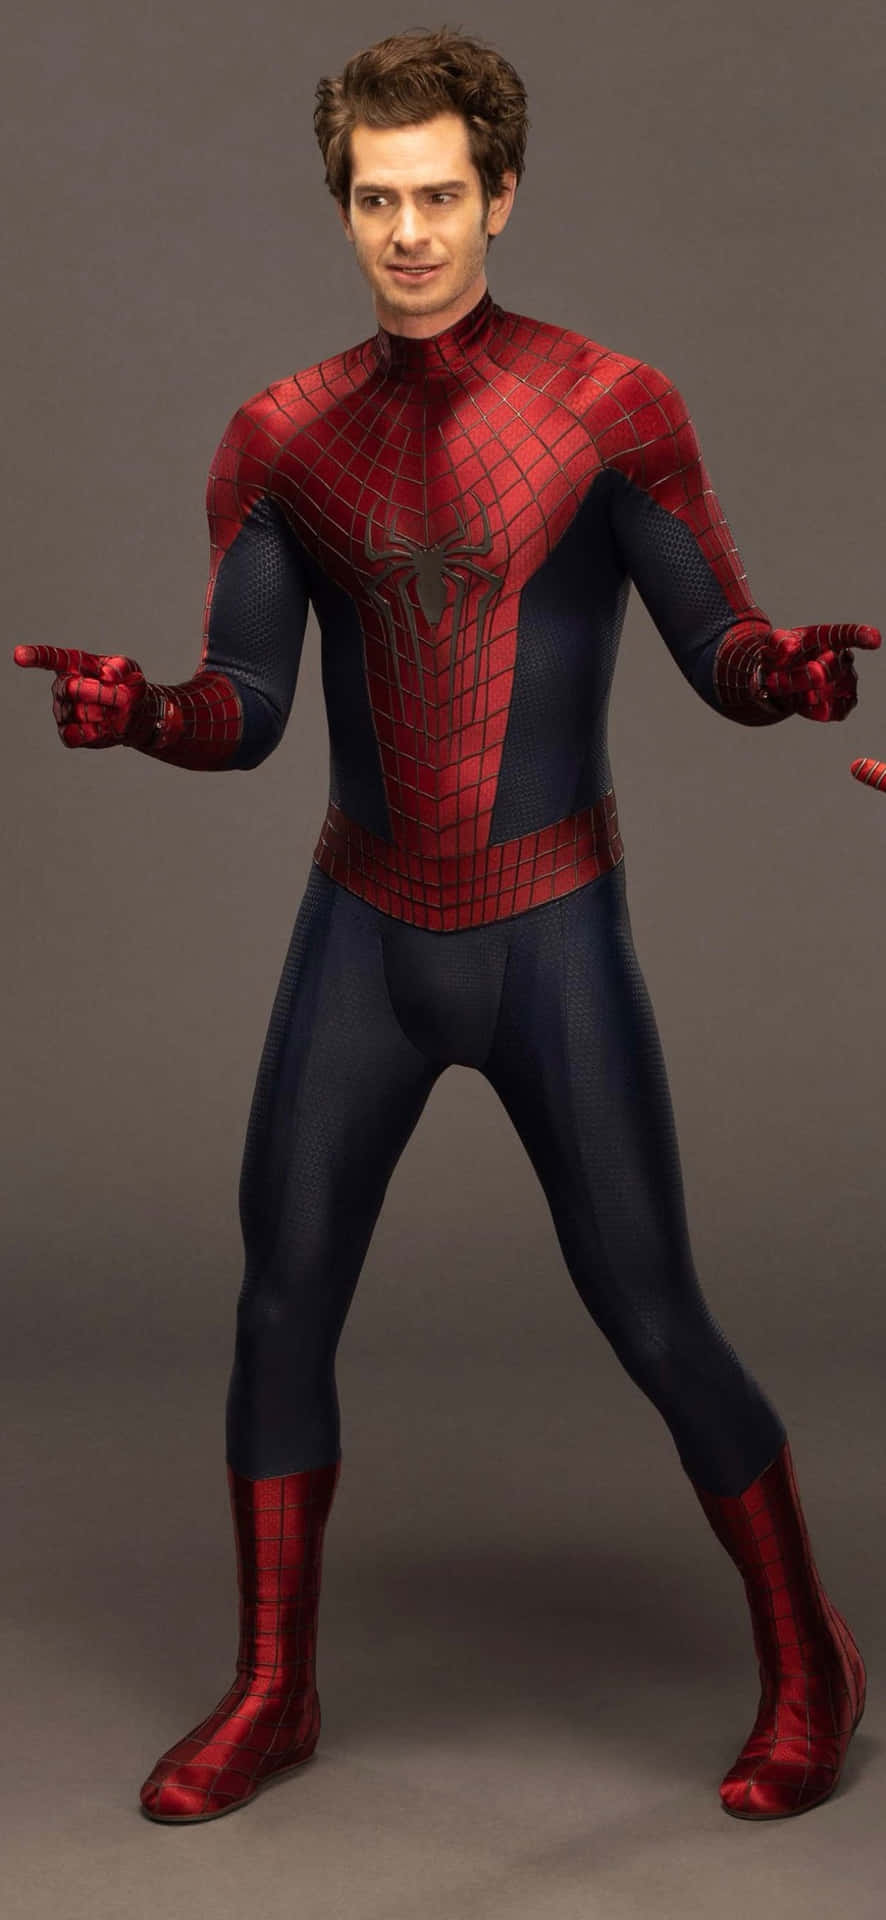 Andrewgarfield Klädde Upp Sig Som Spider Man För En Episk Äventyr. Wallpaper